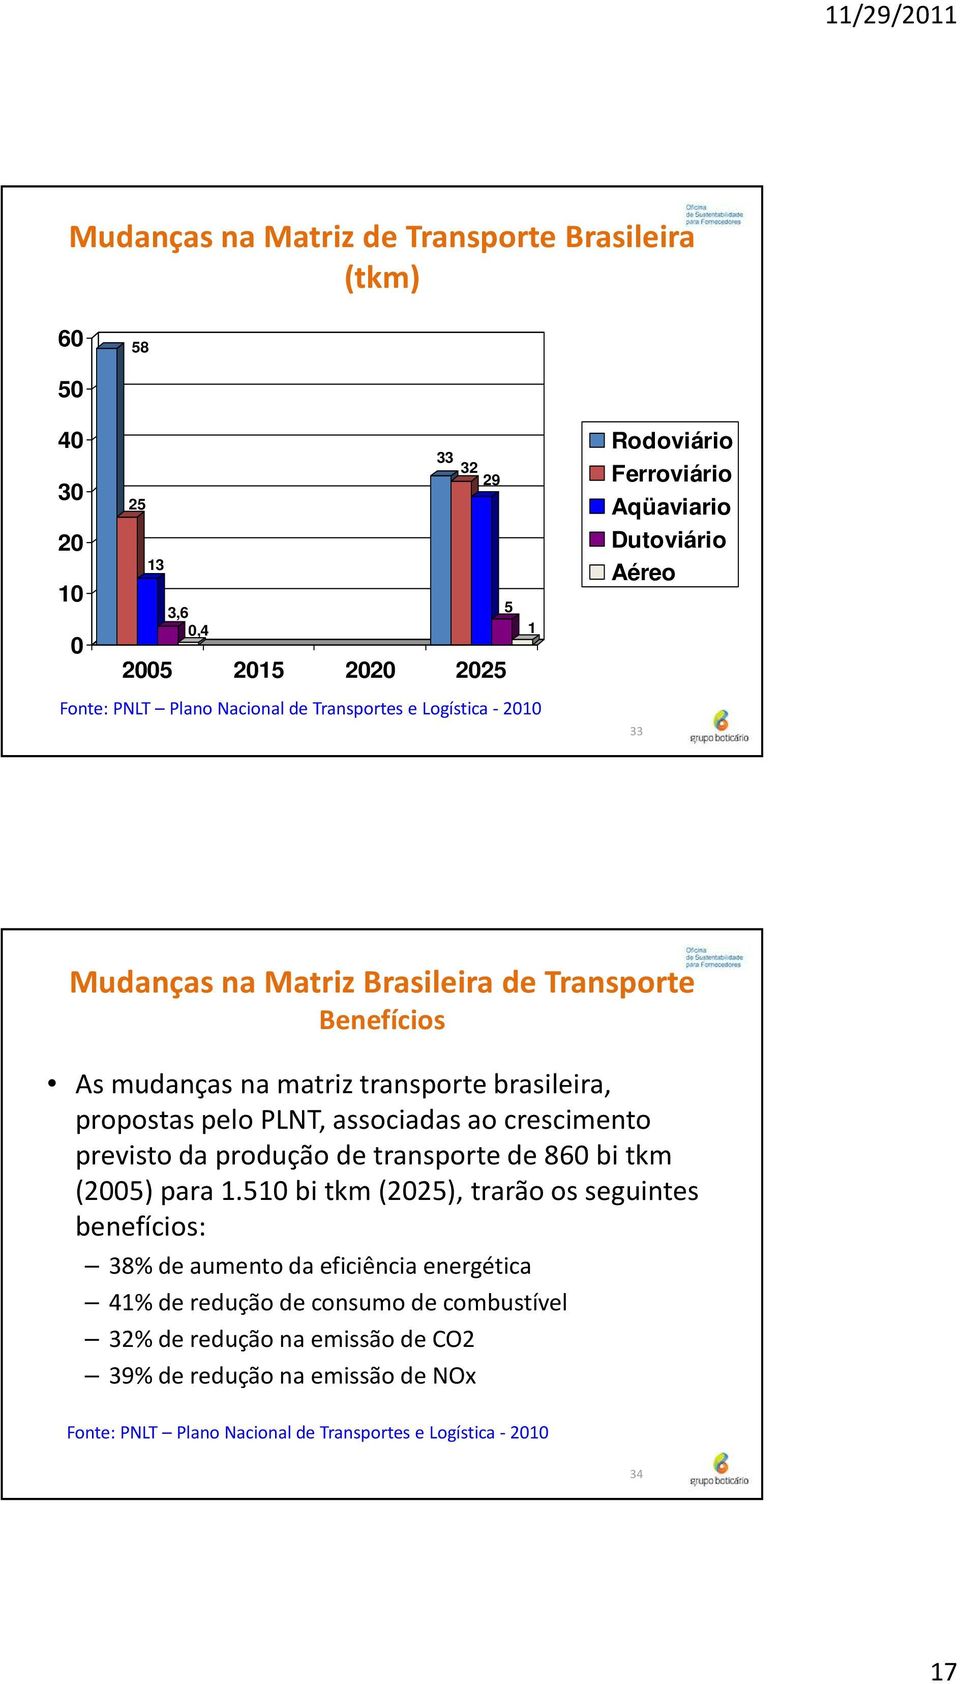 pelo PLNT, associadas ao crescimento previsto da produção de transporte de 860 bi tkm (2005) para 1.